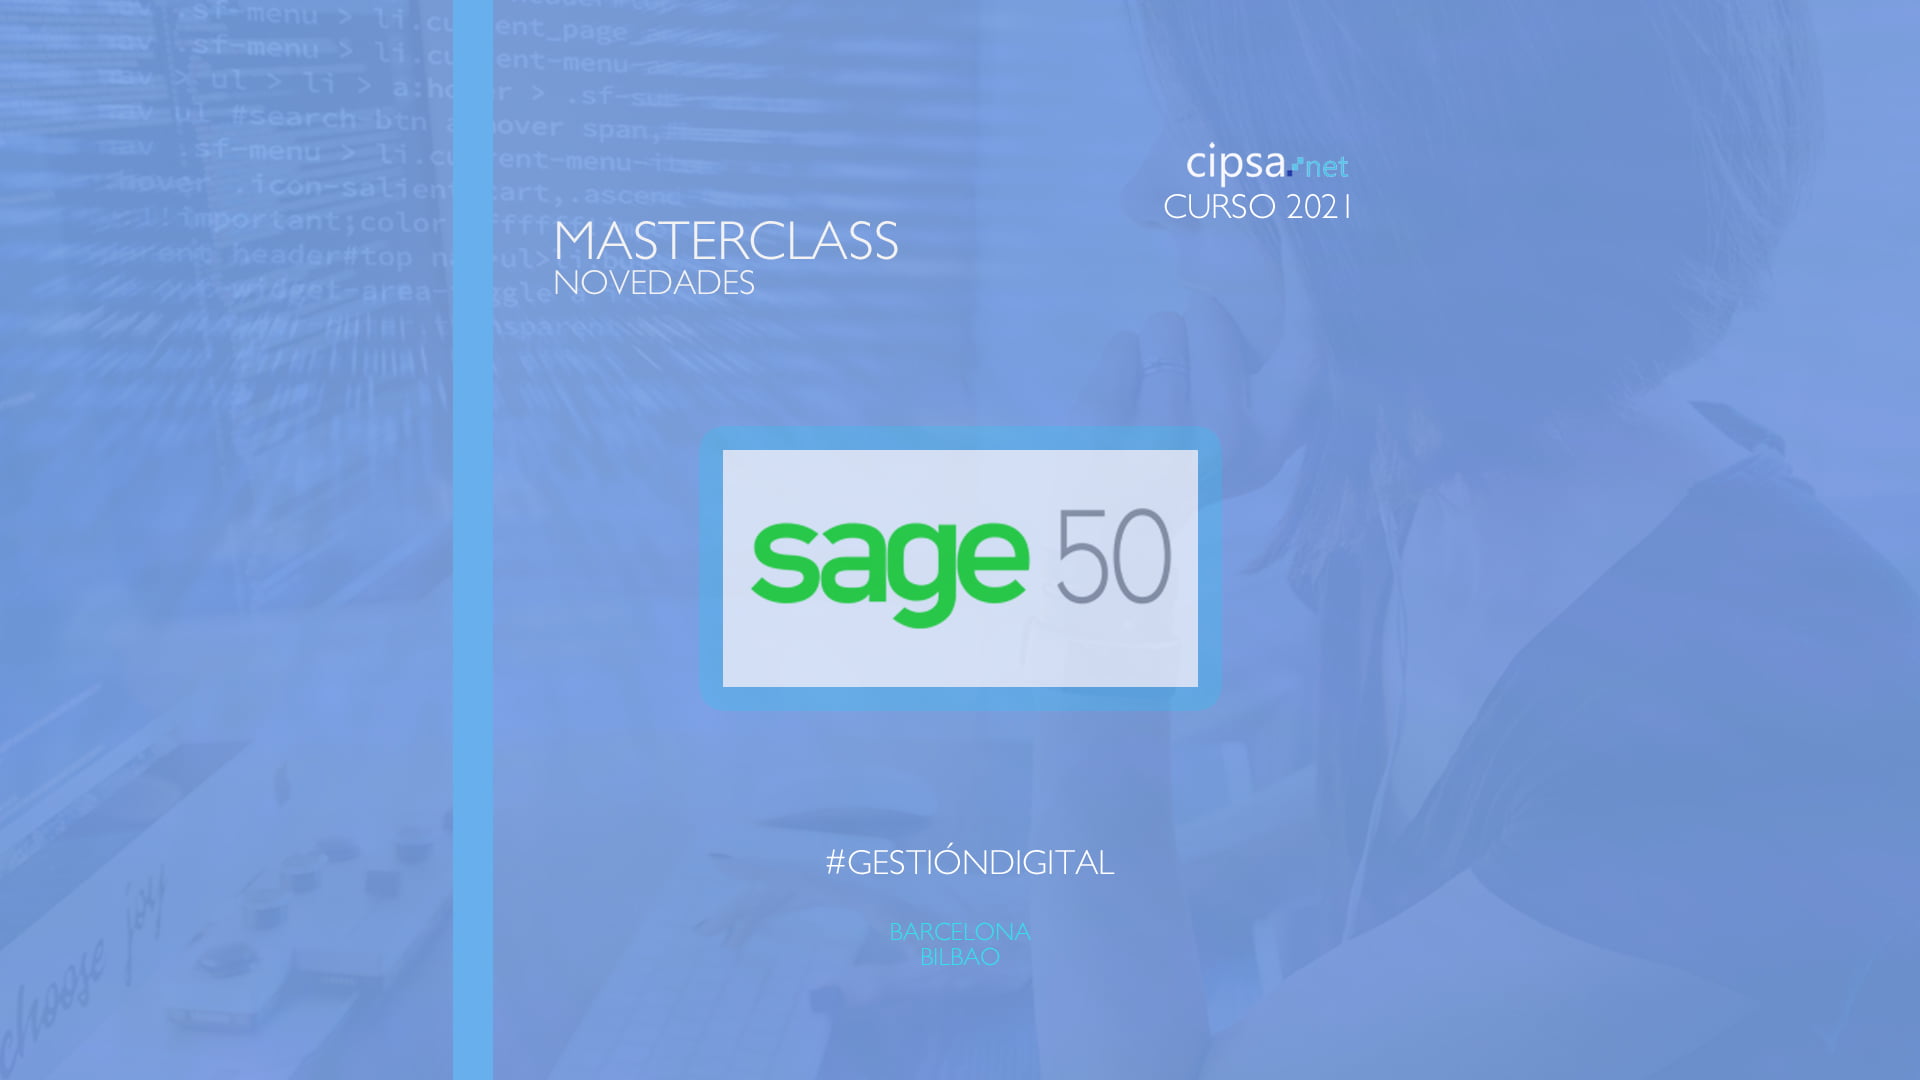 Sage 50 la aplicación ideal para la gestión contable digital para pymes.